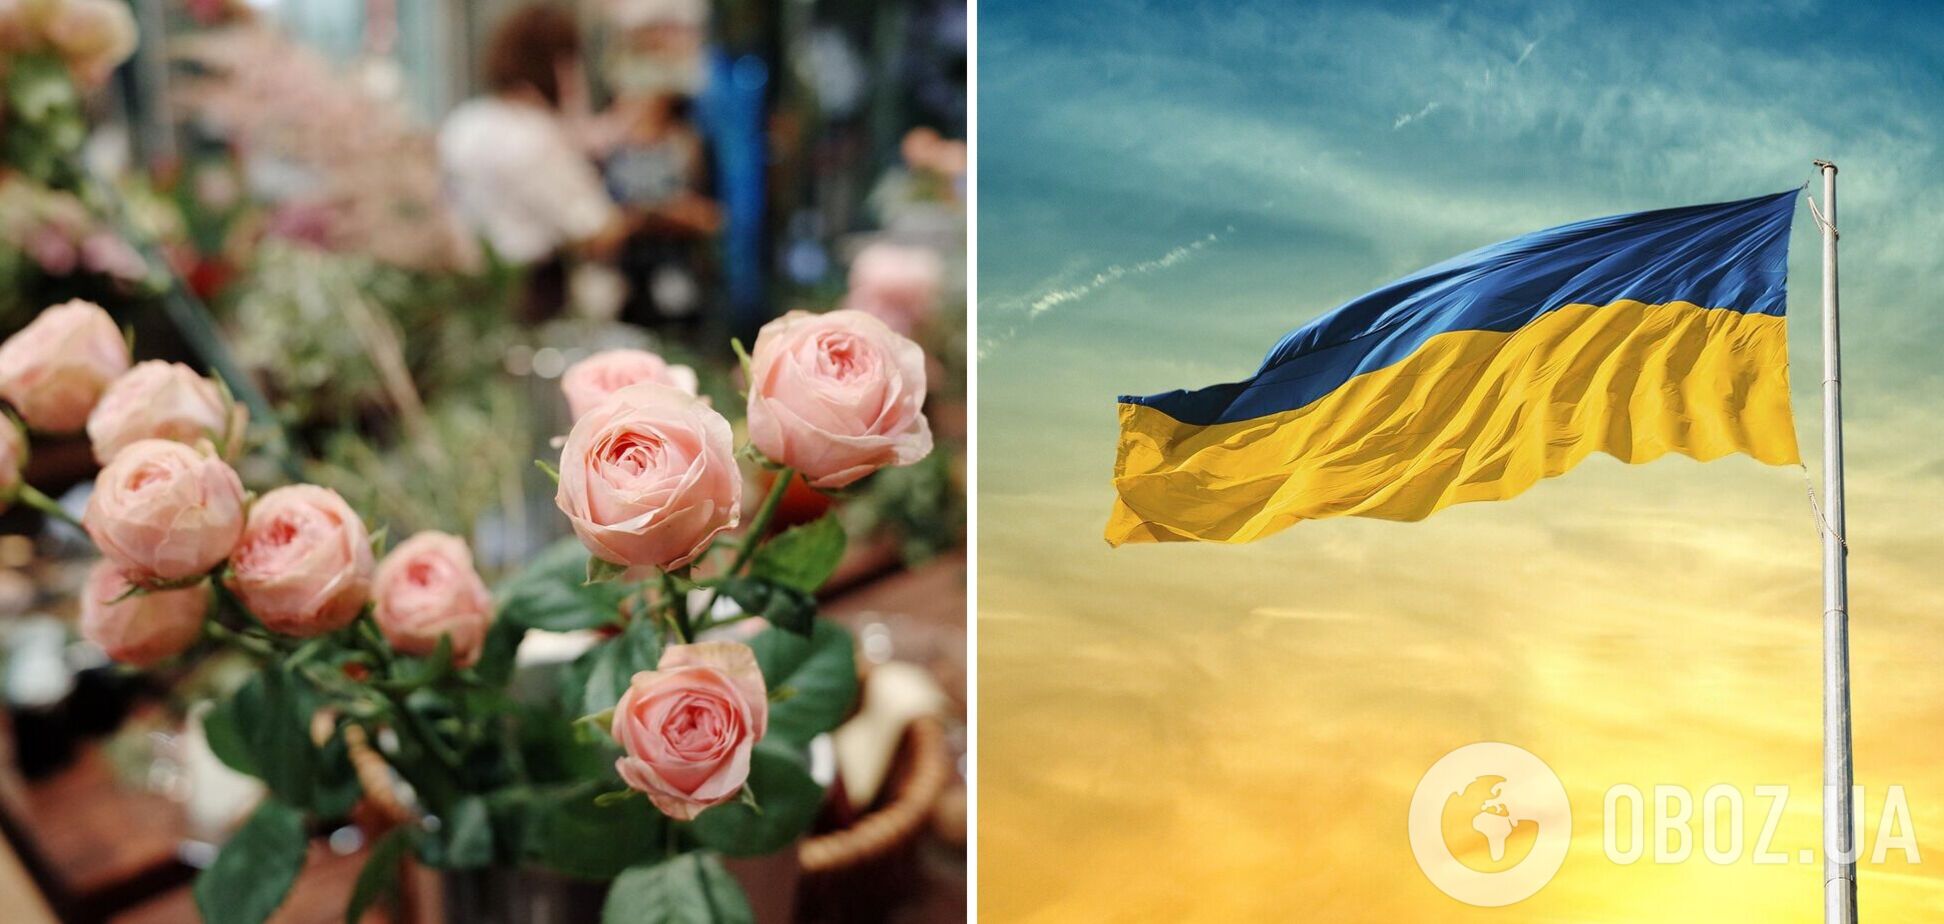 'А вы спросили, понимаю ли я украинский?' В Киеве цветочный магазин попал в языковой скандал